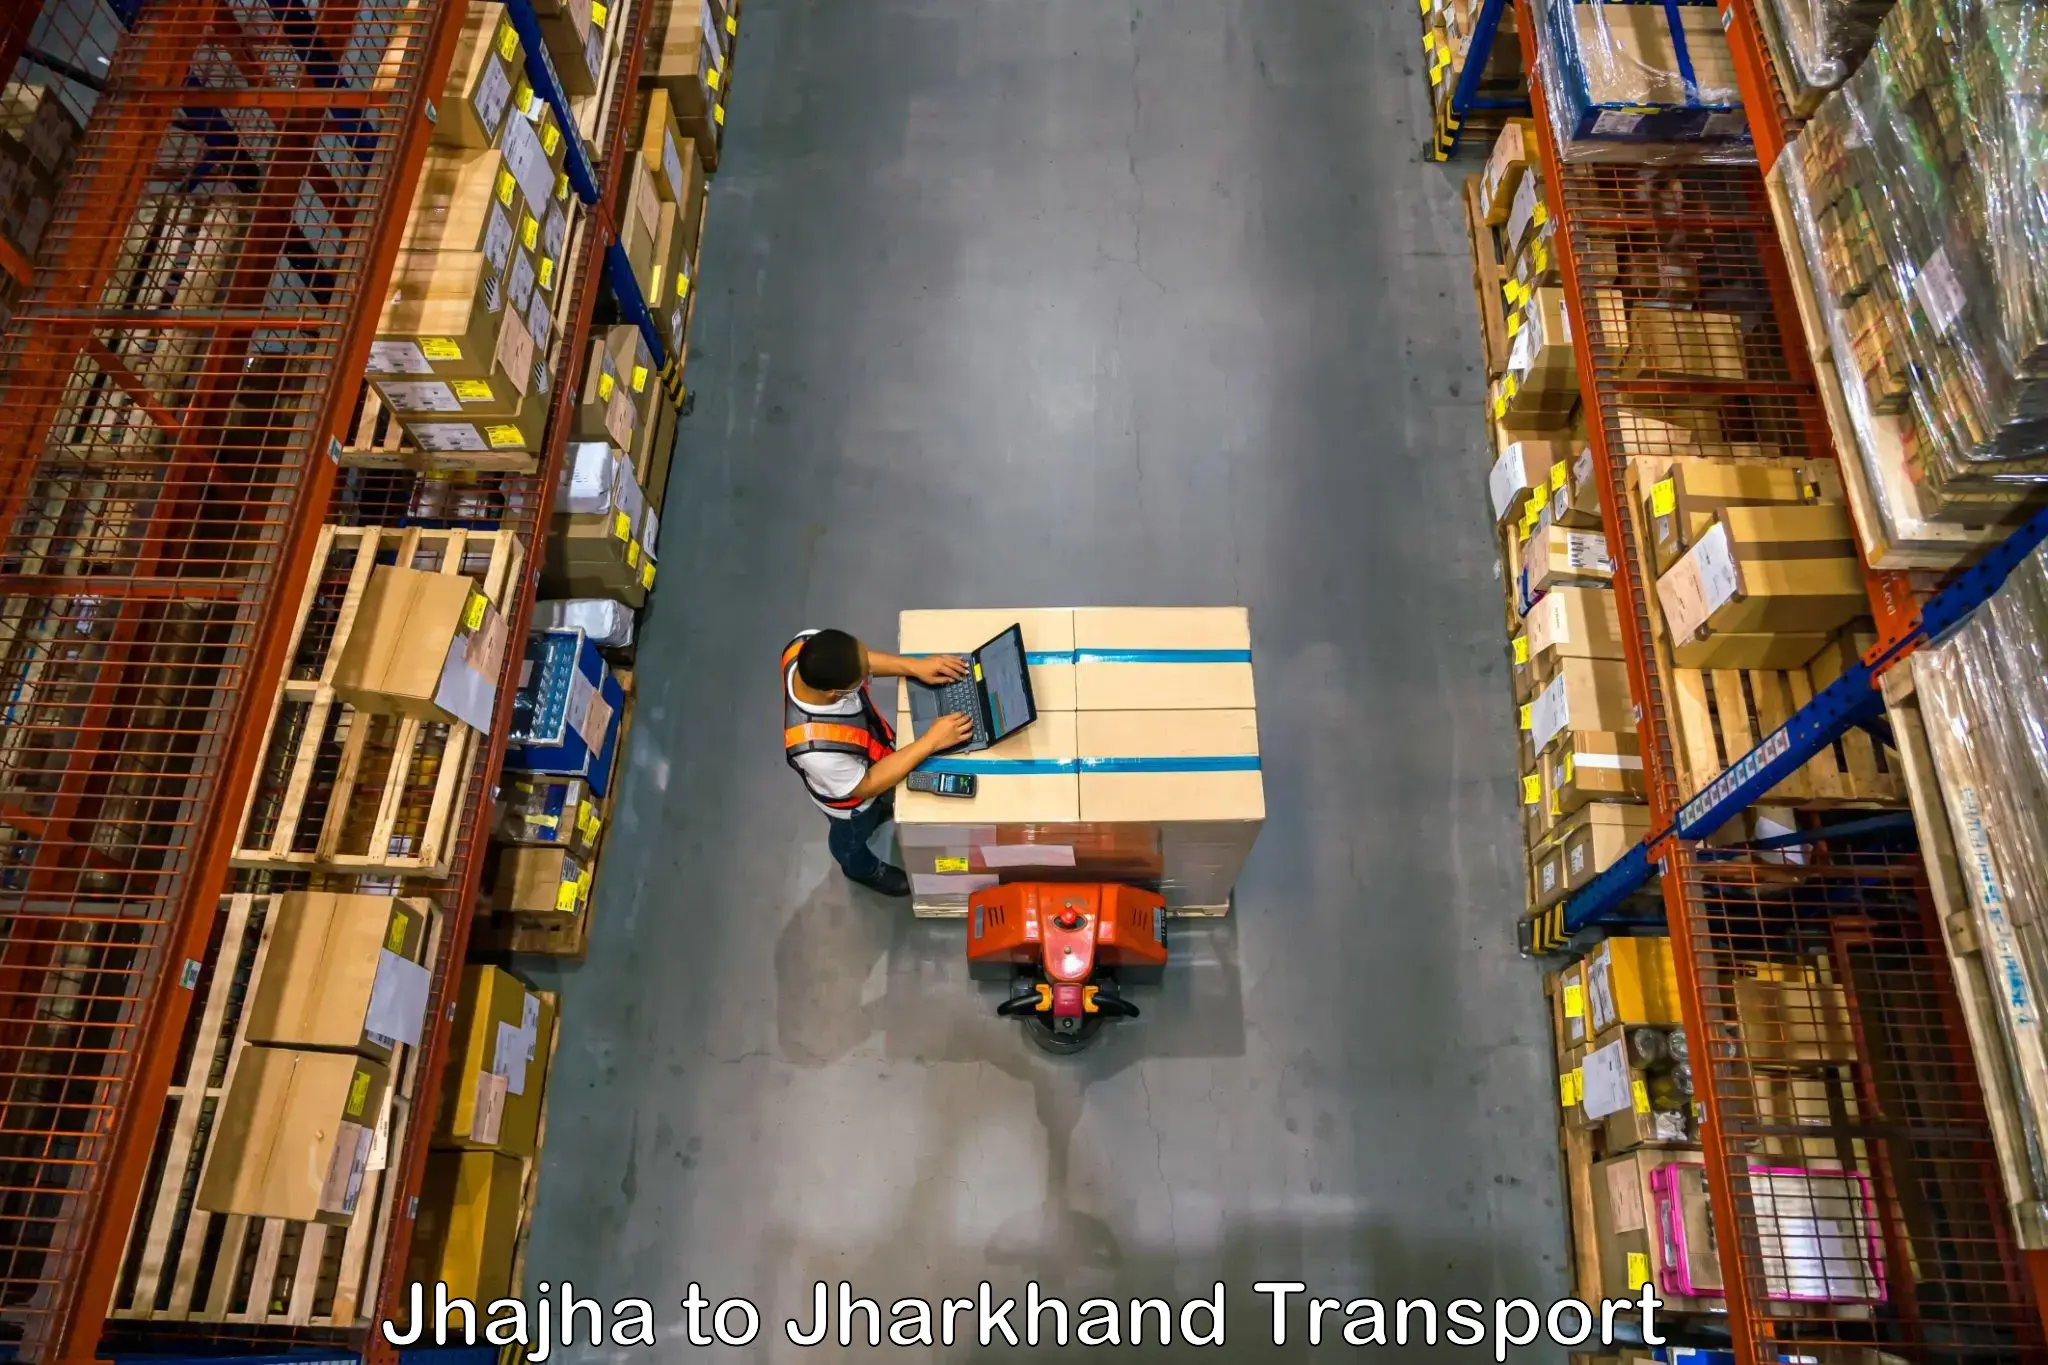 Daily parcel service transport Jhajha to Medininagar